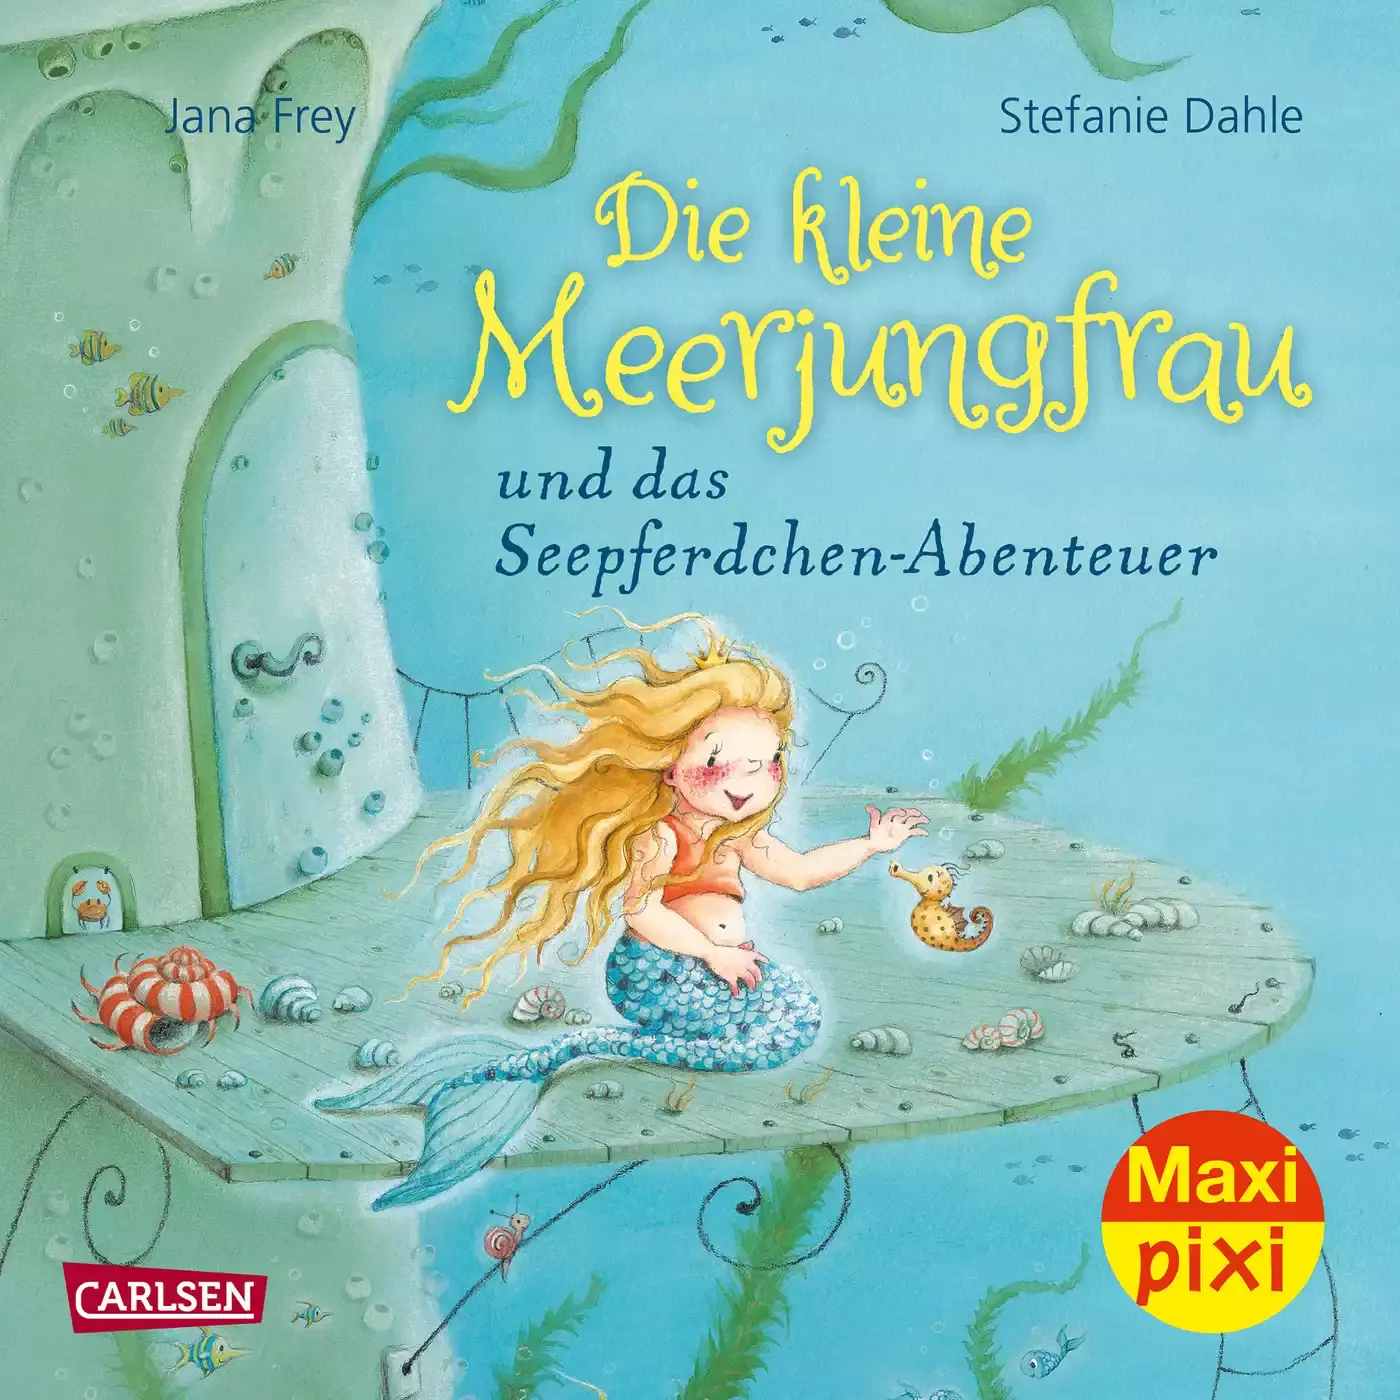 Maxi Pixi Die kleine Meerjungfrau CARLSEN 2000582256206 3